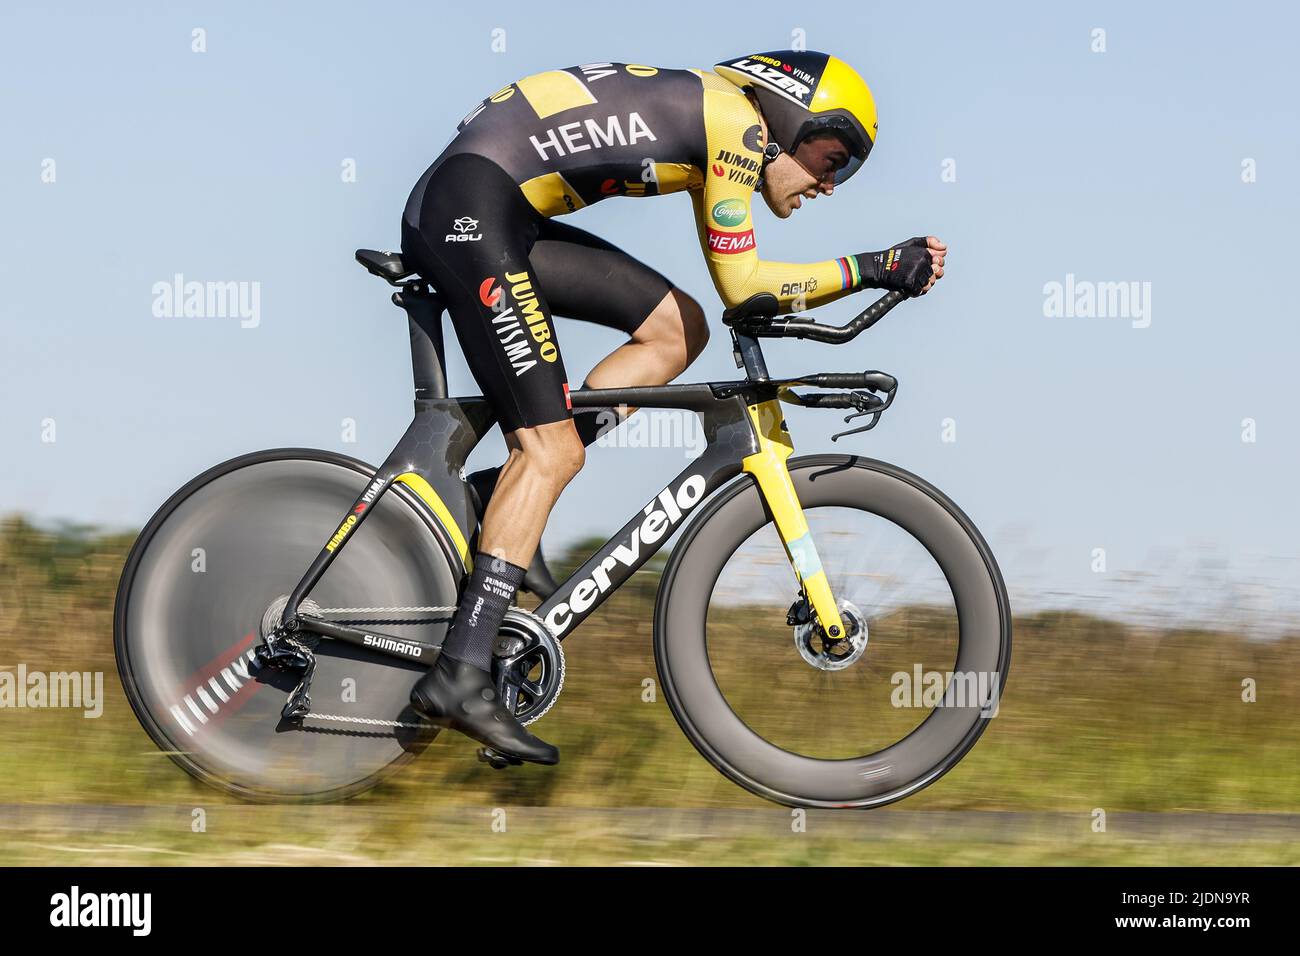 EMMEN - ciclista Tom Dumoulin durante i Campionati nazionali olandesi di prova del tempo a Drenthe. ANP BAS CZERWINSKIA Foto Stock